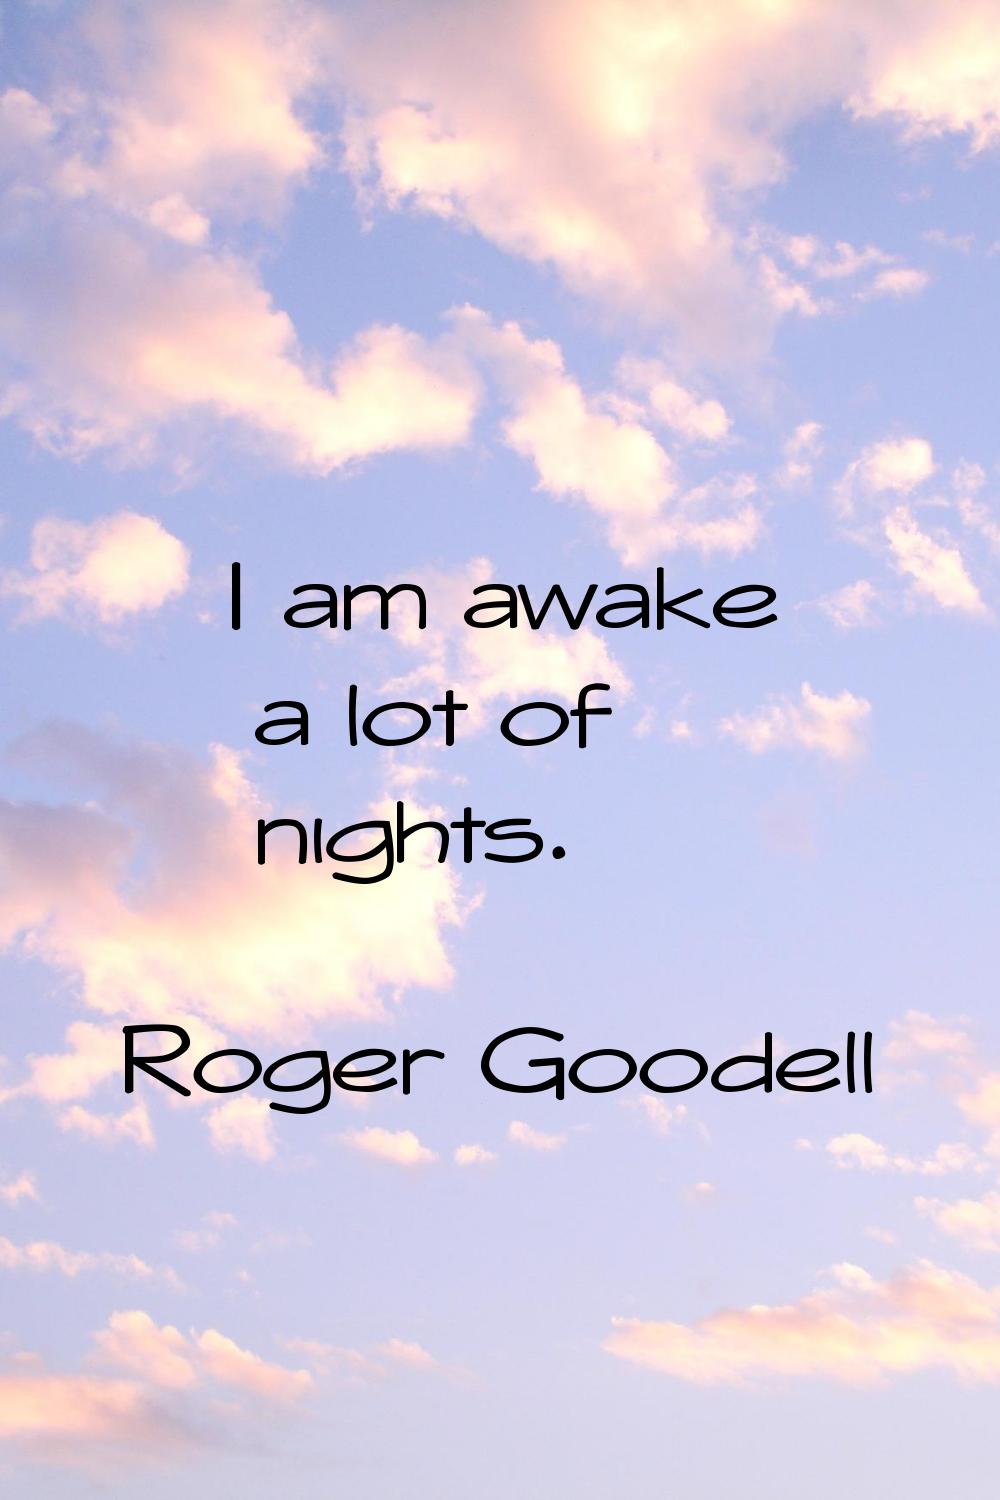 I am awake a lot of nights.